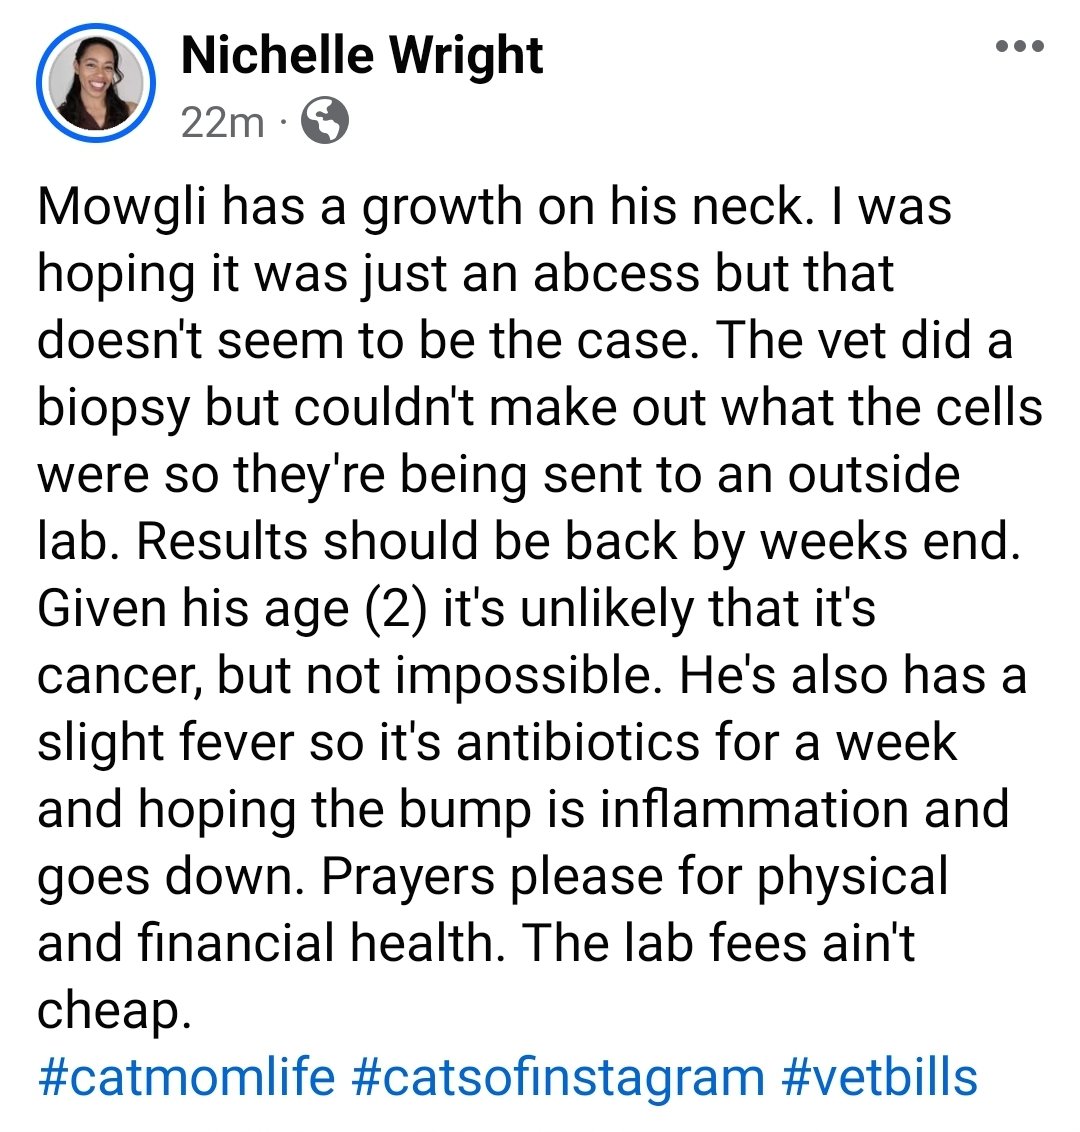 #catmomlife #cancer #vetbills